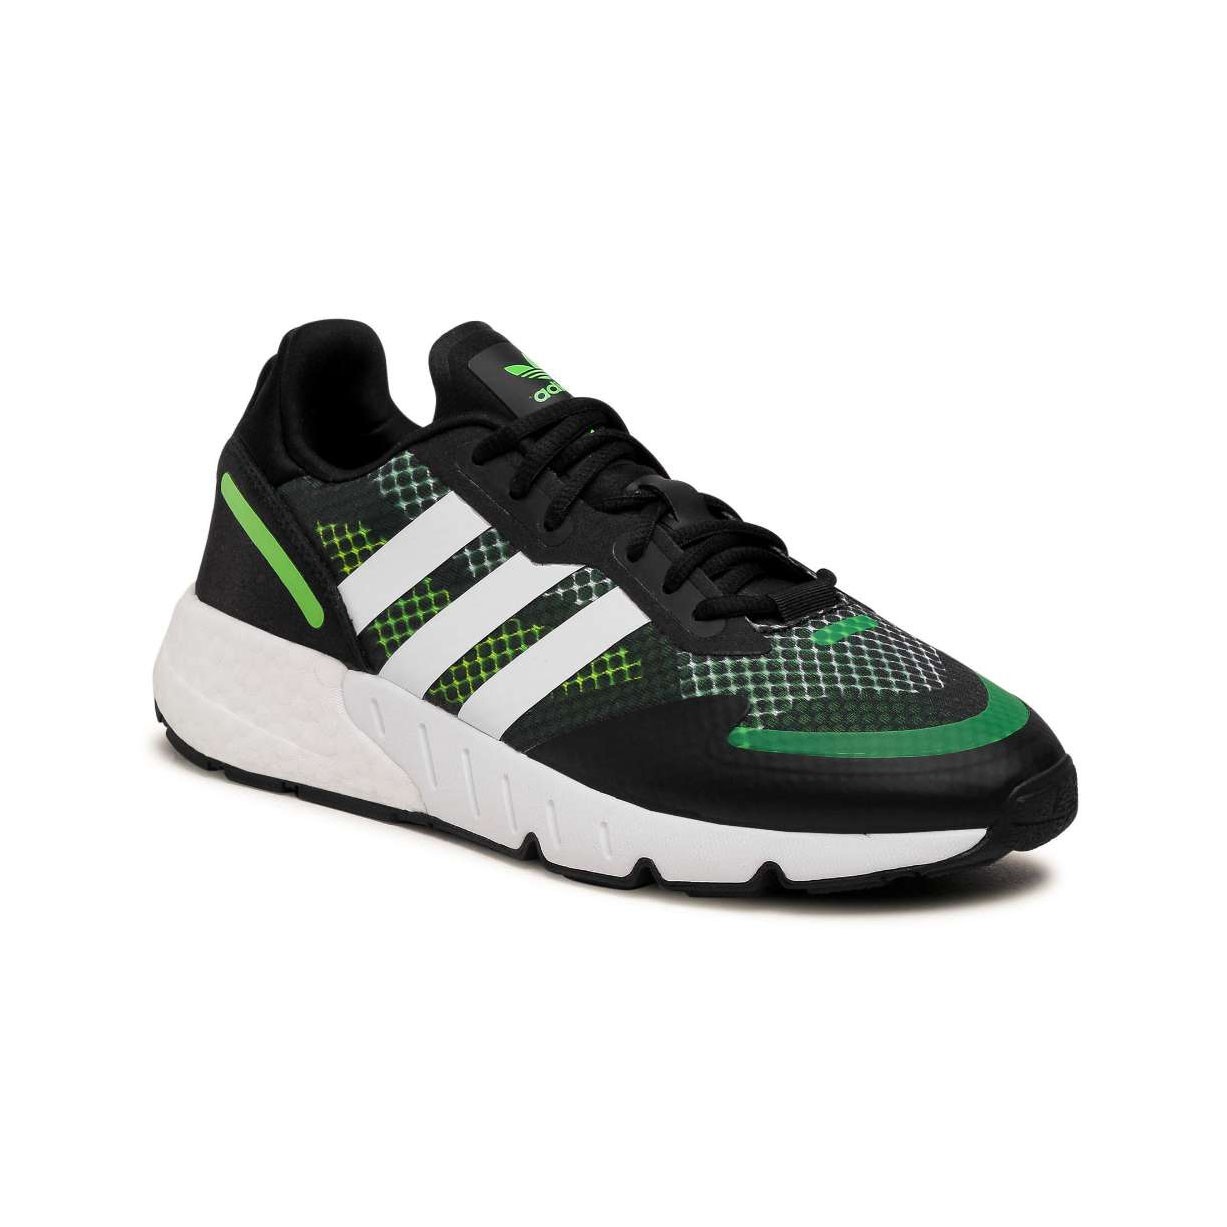 Adidas ZX 1K Boost FY5685 Ανδρικό Αθλητικό Μαύρο/Πράσινο adidas-fy5685-mayro-prasino